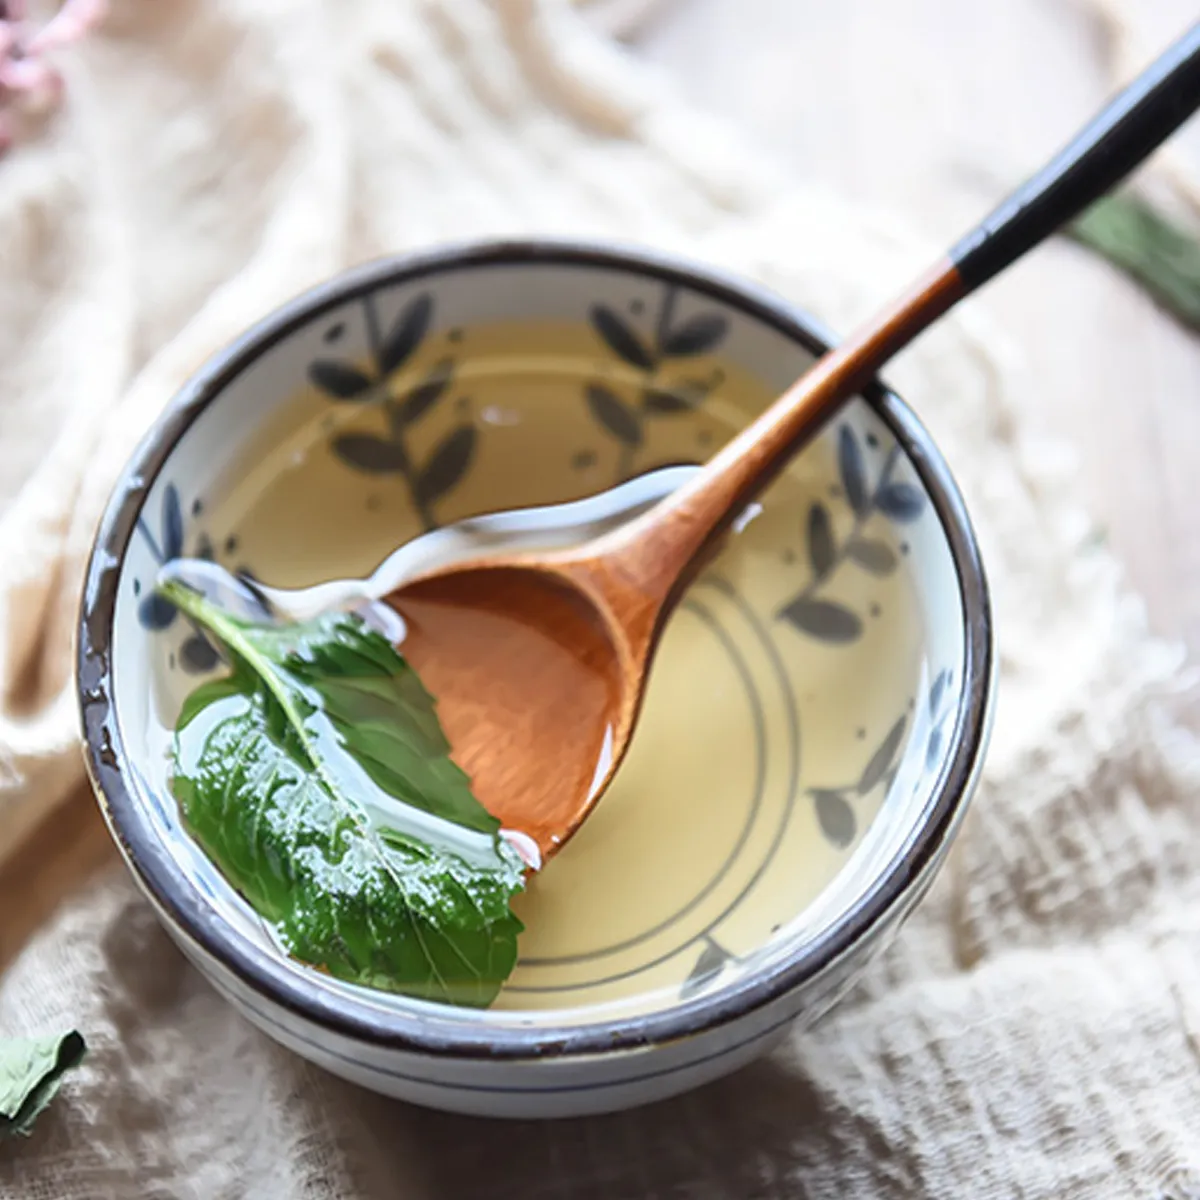 Высушенная мята листовой чай Top Harge Mentha оставляет освежающий съедобный китайский специальный зеленый чай